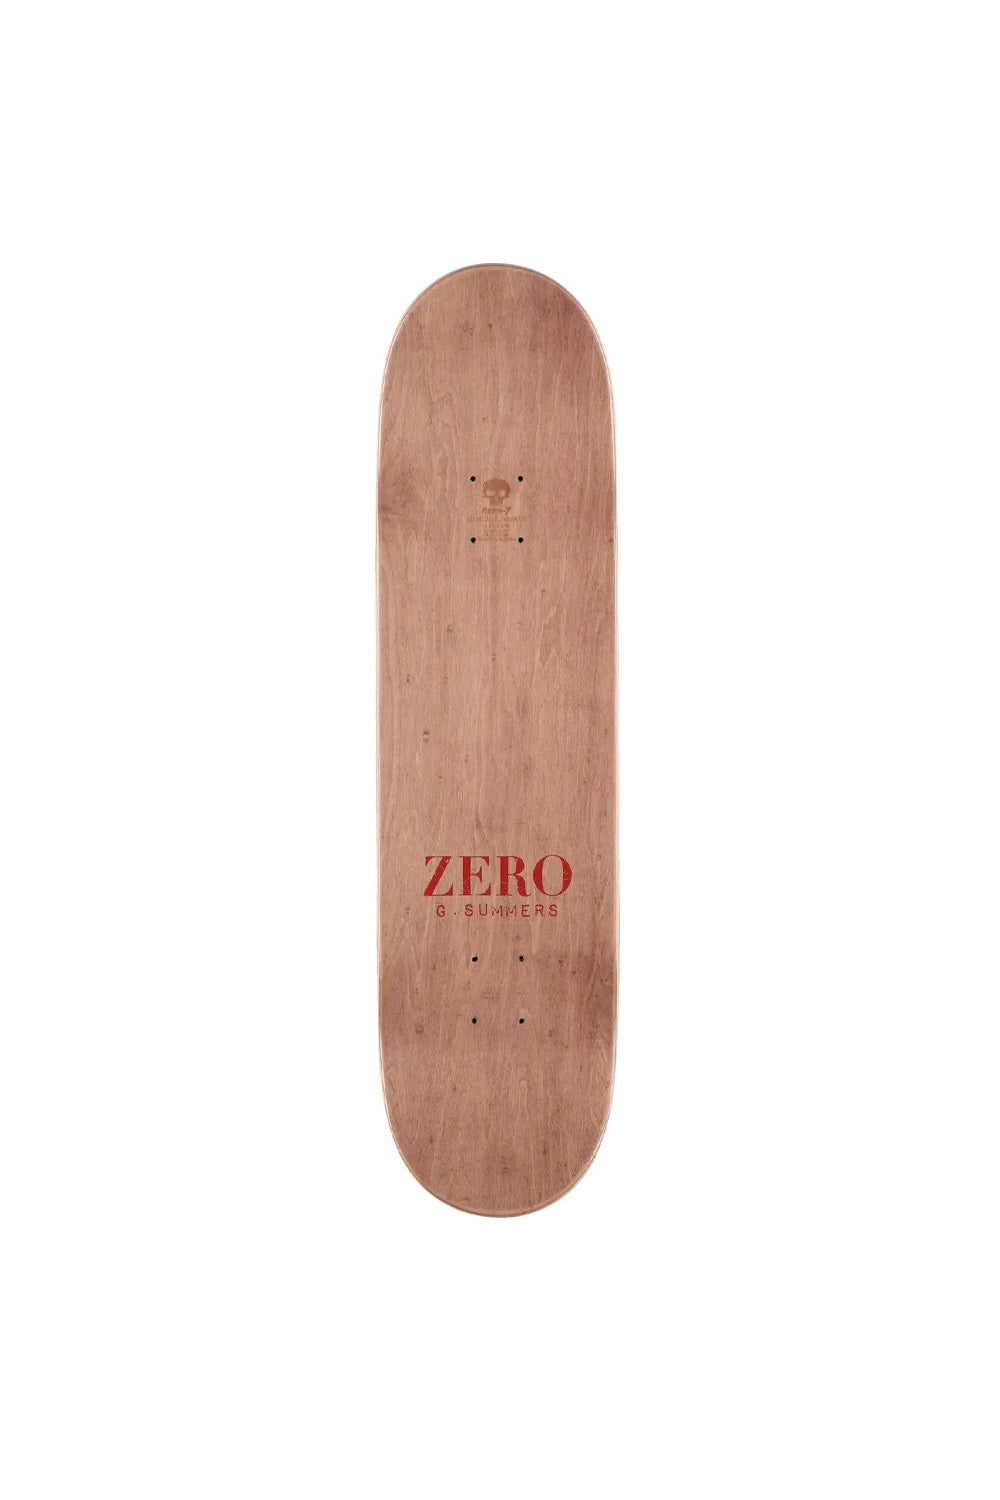 Zero Summers In Utero Deck 8,25″ - BONKERS